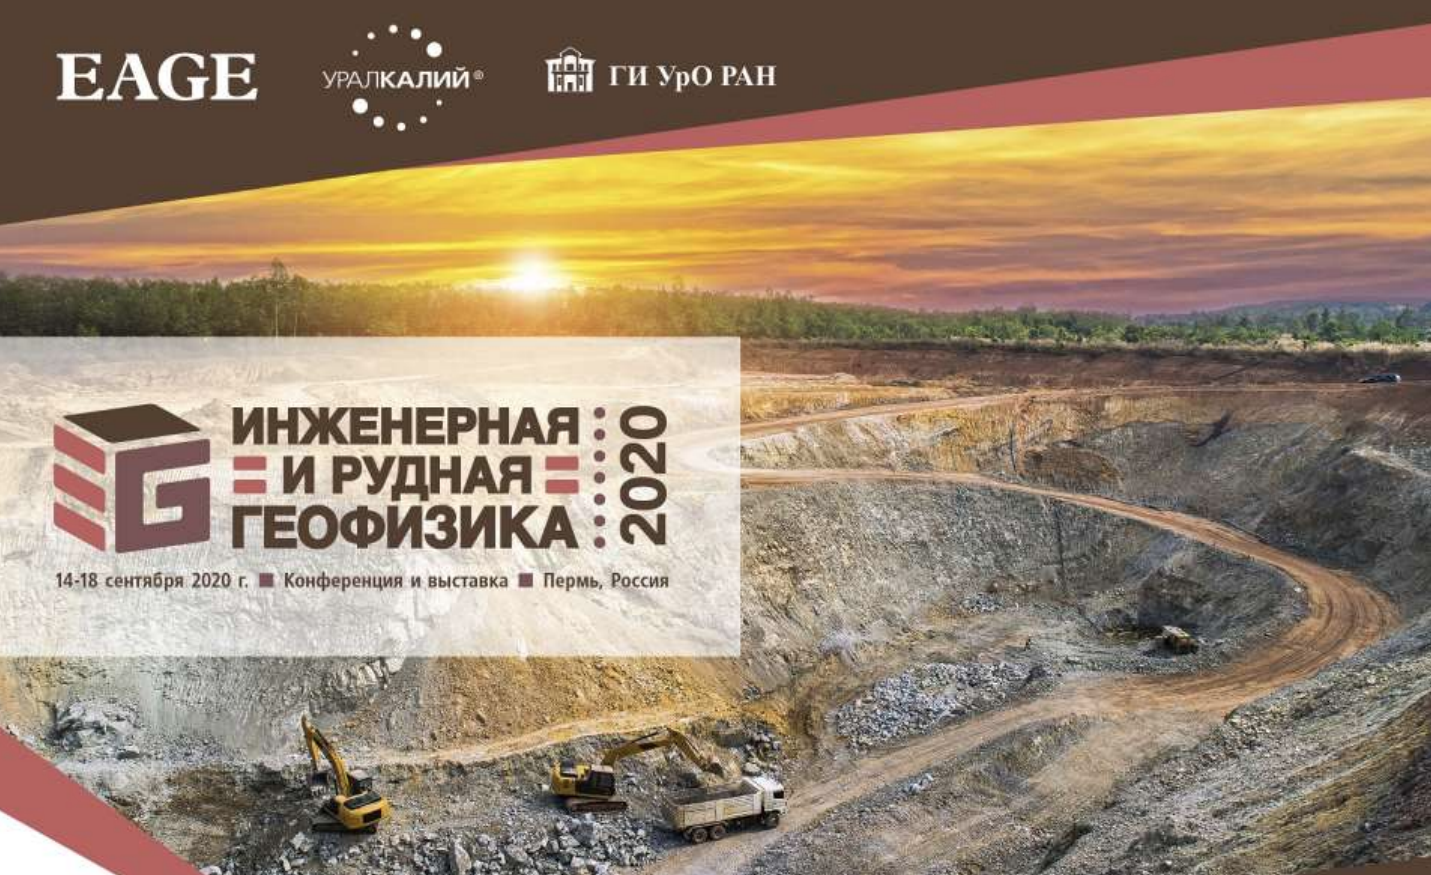 Конференция и выставка «Инженерная и рудная геофизика 2020»